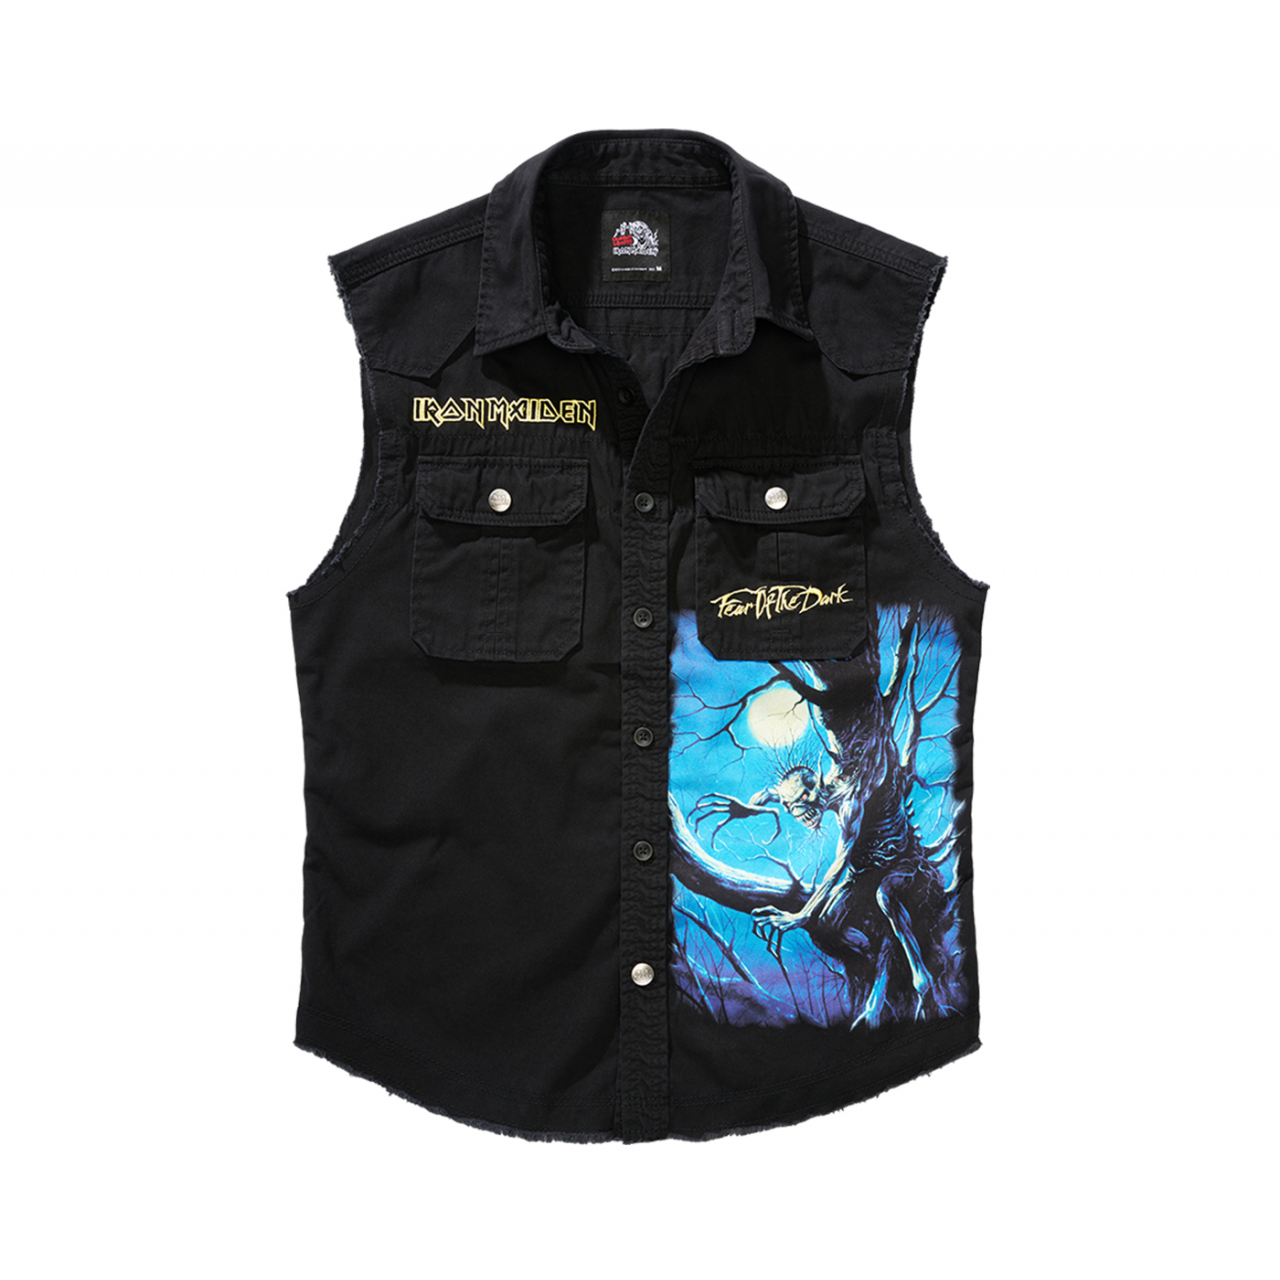 Košile Brandit Iron Maiden Vintage Shirt Sleeveless FOTD - černá, L